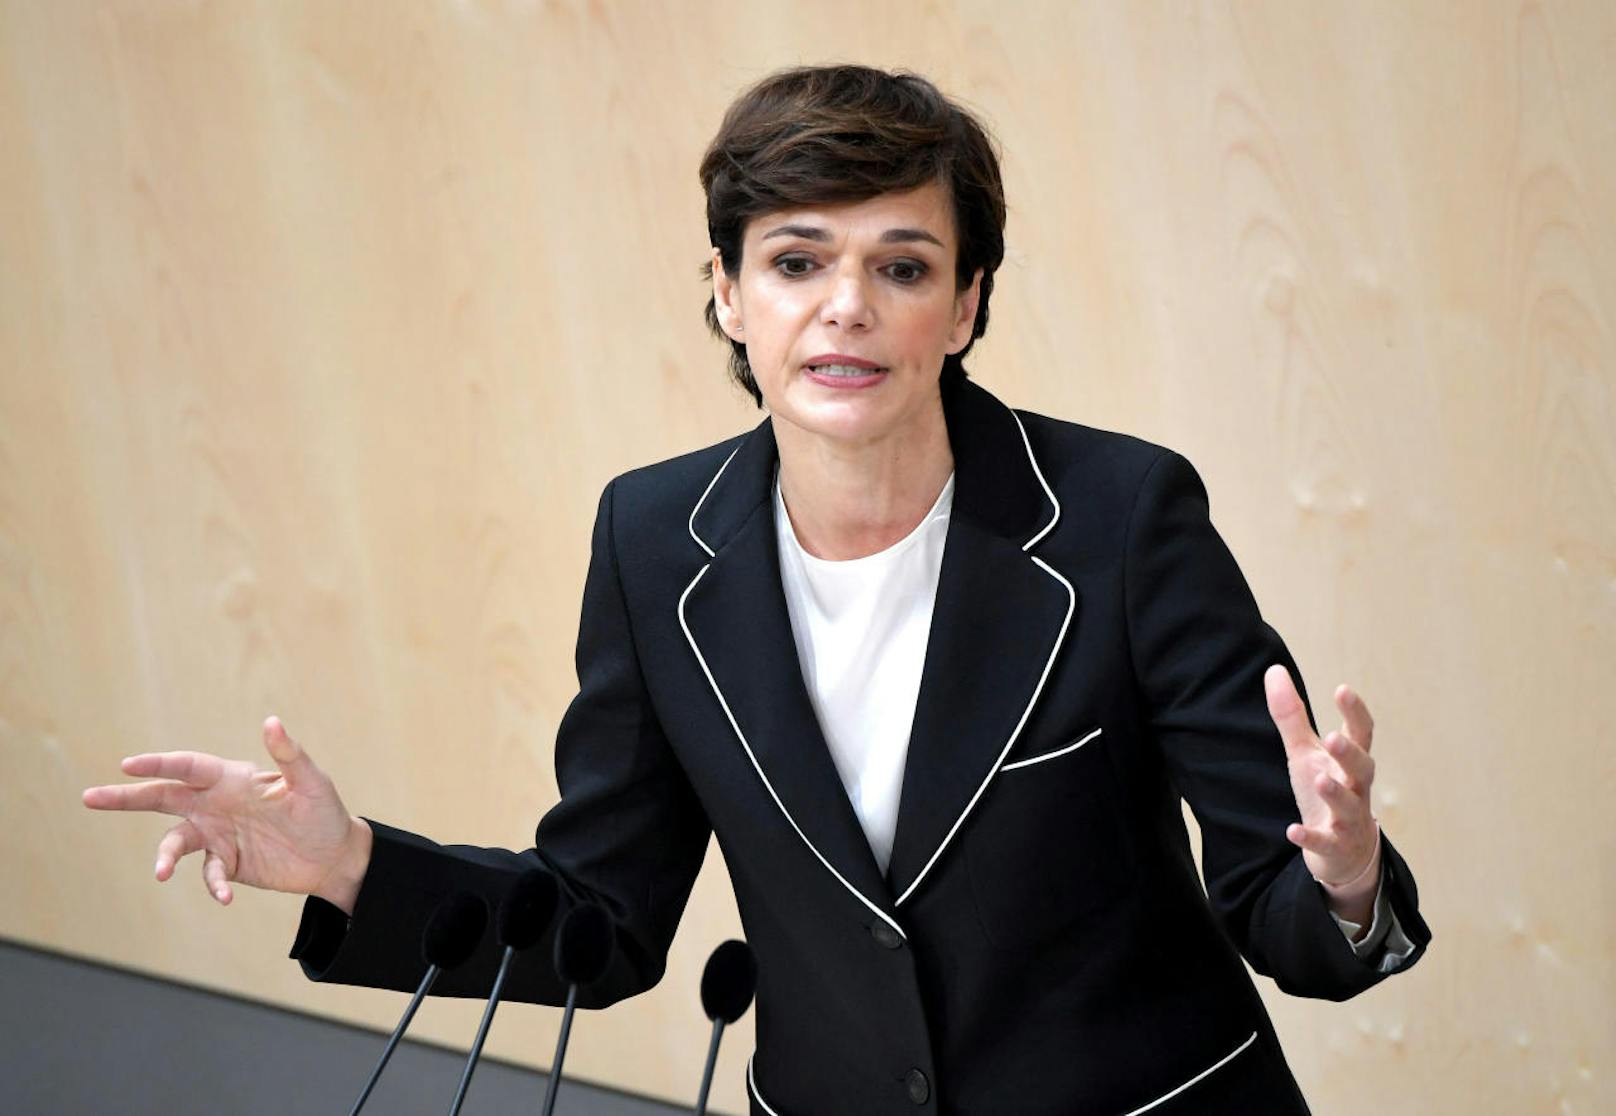 Die 48-Jährige ist die erste Frau an der Spitze der österreichischen Sozialdemokratie.